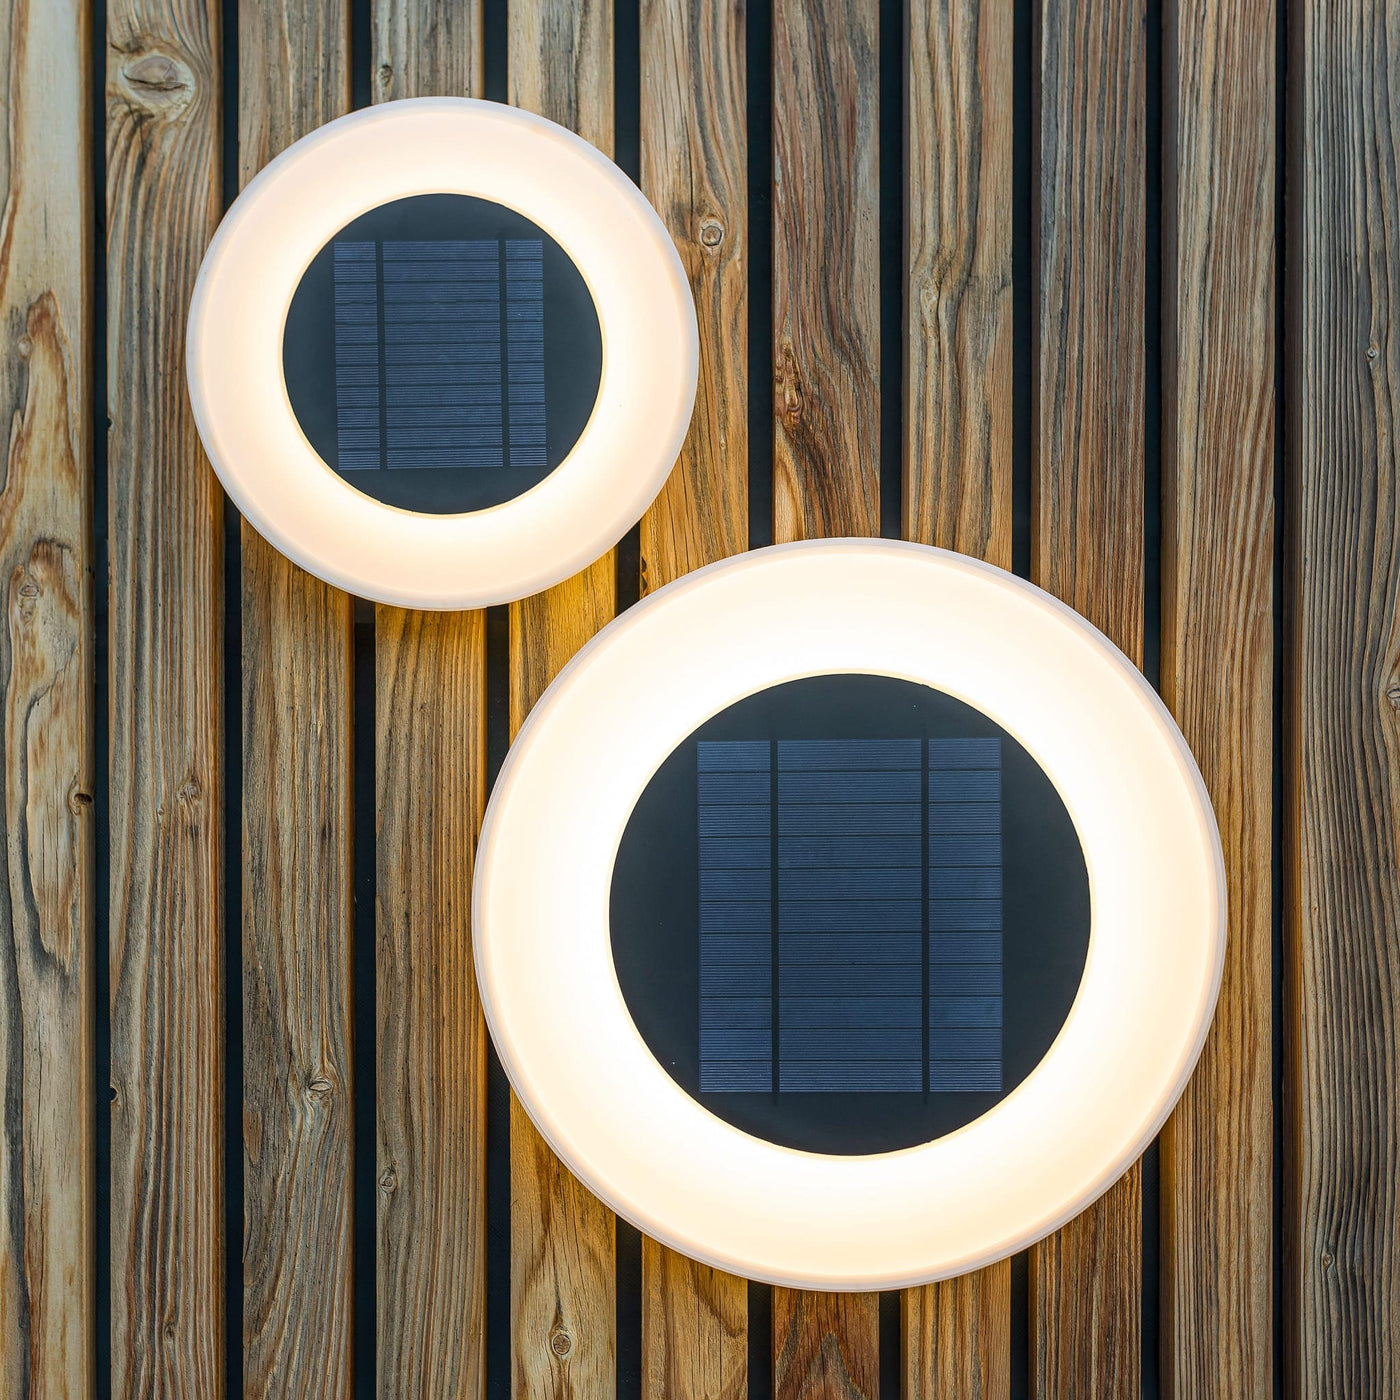 Lampe murale Wally par Newgarden : éclairage durable avec panneau solaire et capteur crépusculaire, parfaite pour un jardin écologique et une économie d'énergie efficace.